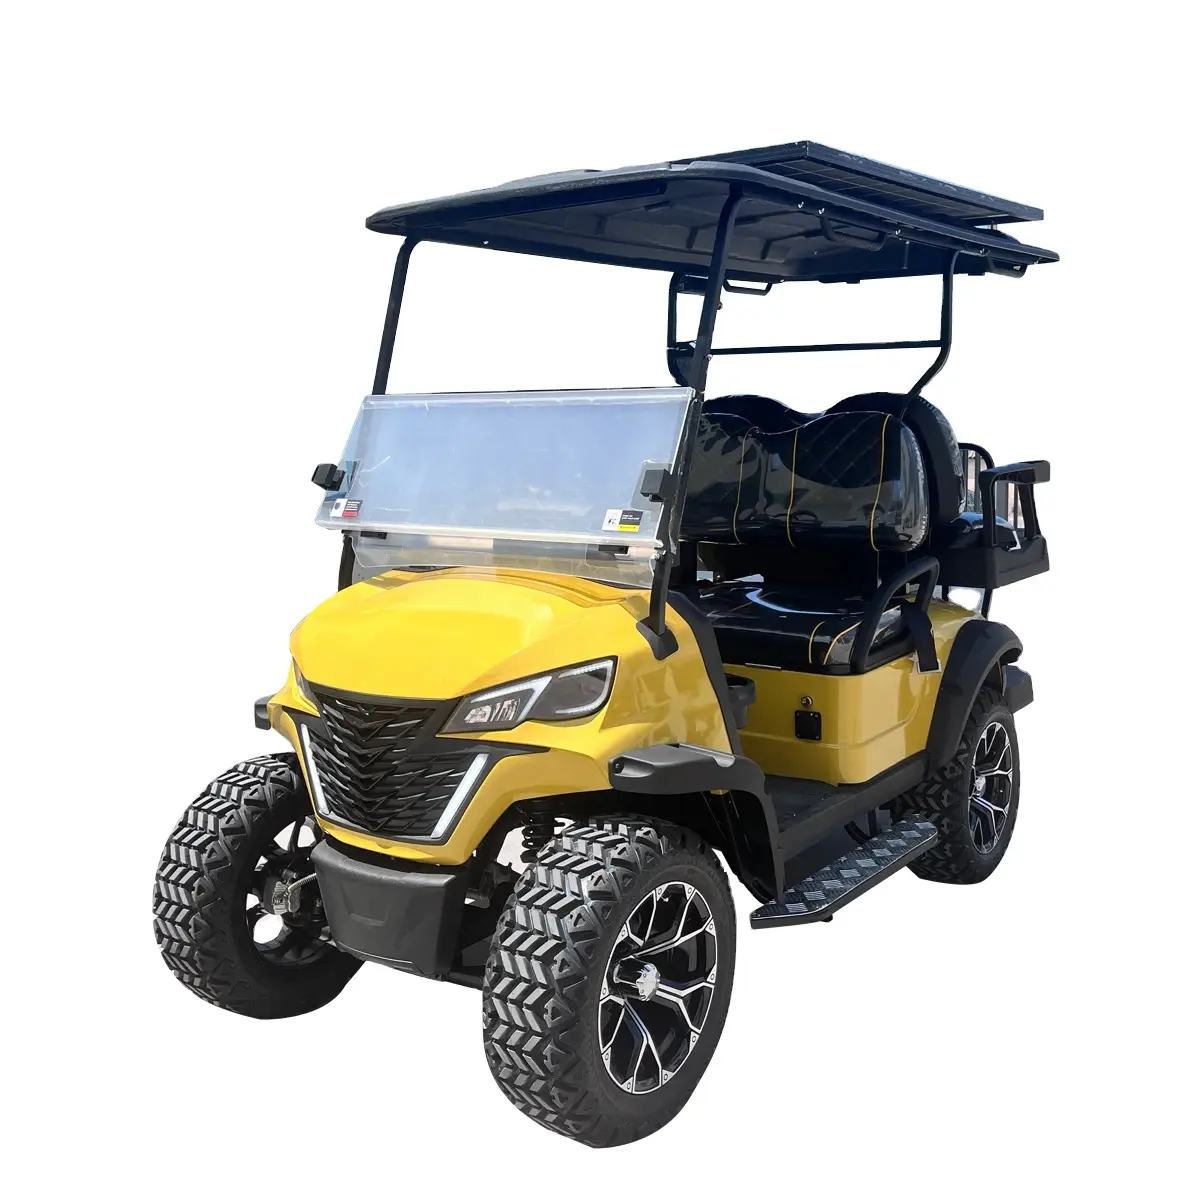 ईईसी ने पर्यटन इलेक्ट्रिक गोल्फ कार्ट के लिए 2 सीटर इलेक्ट्रिक गोल्फ कार को मंजूरी दी